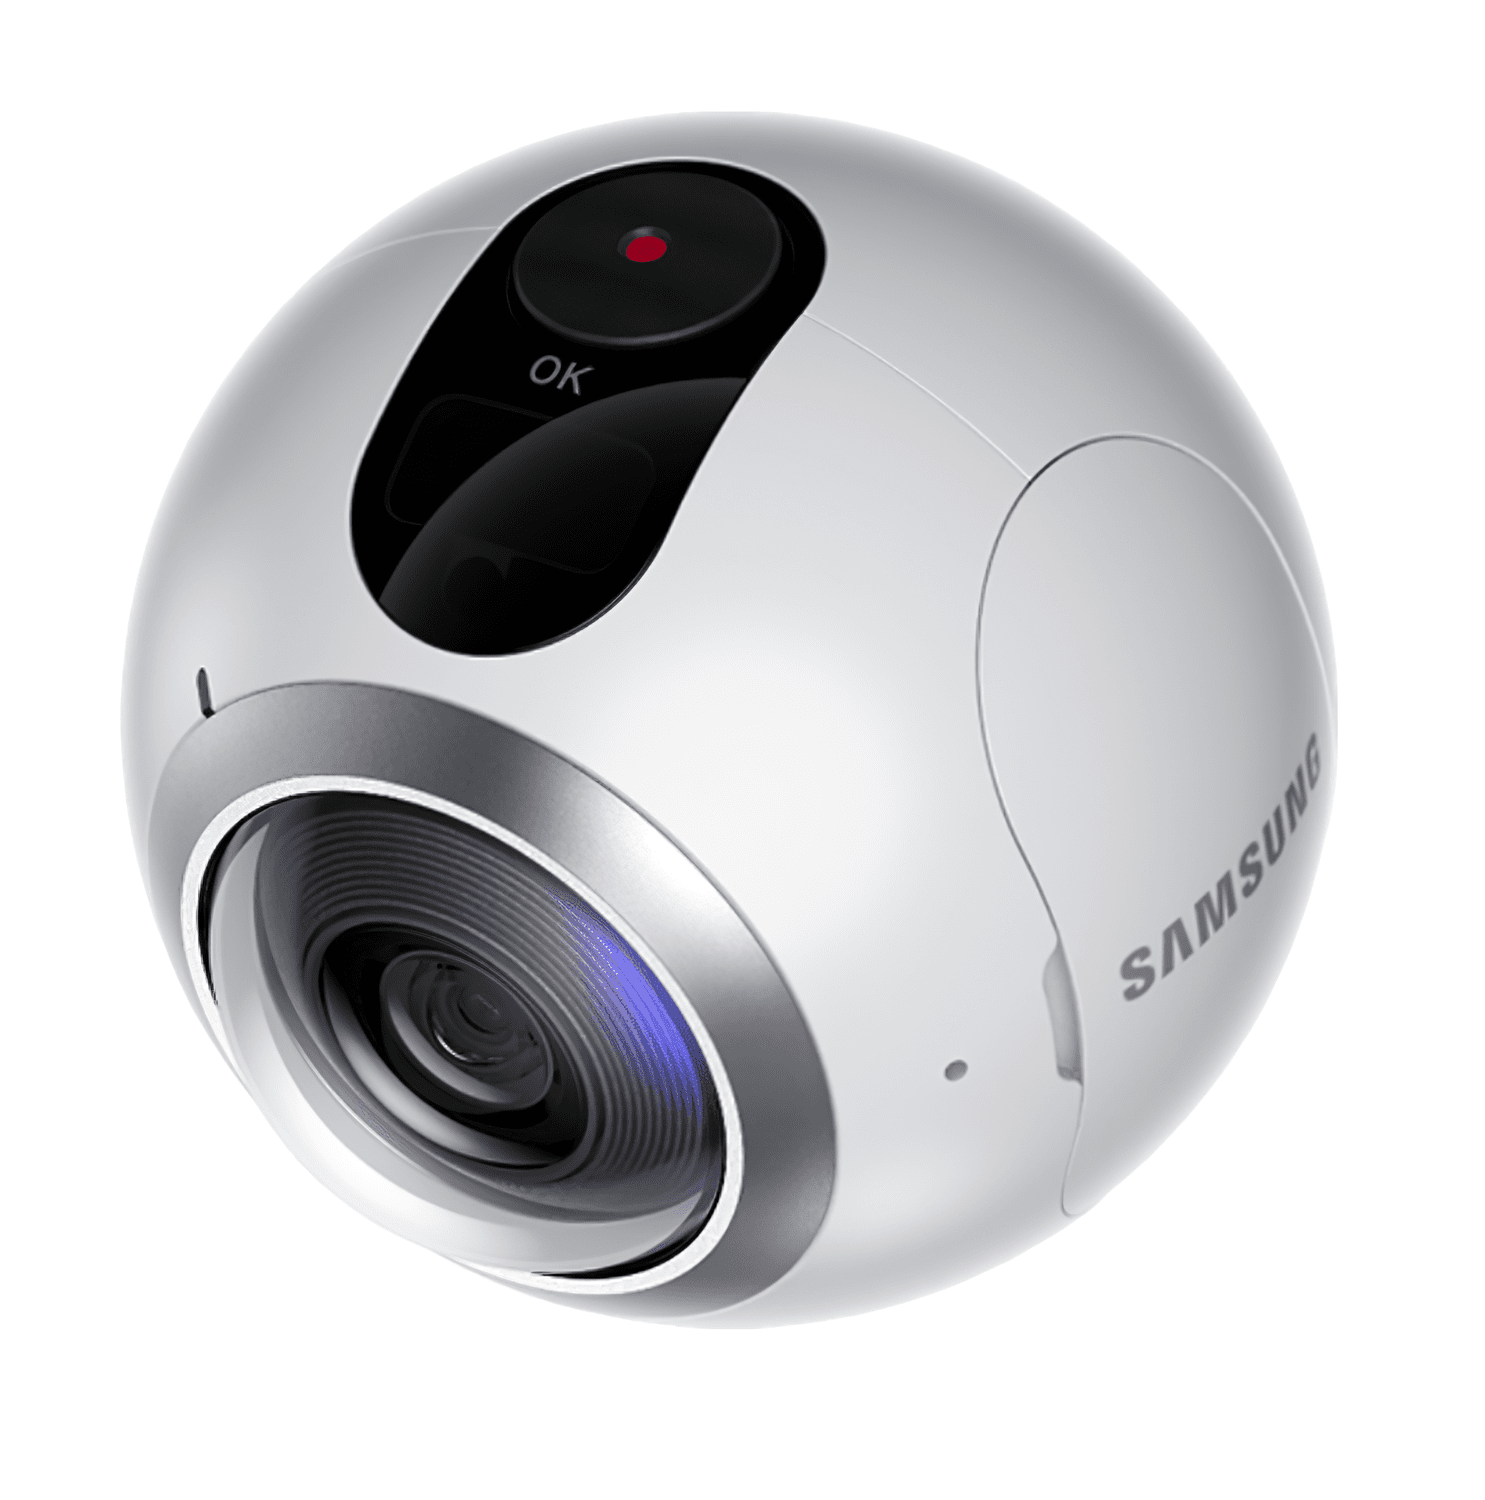 Samsung 360 купить. Самсунг камера 360. Панорамная камера 360 Samsung. Экшен камера самсунг. SM-360c White.